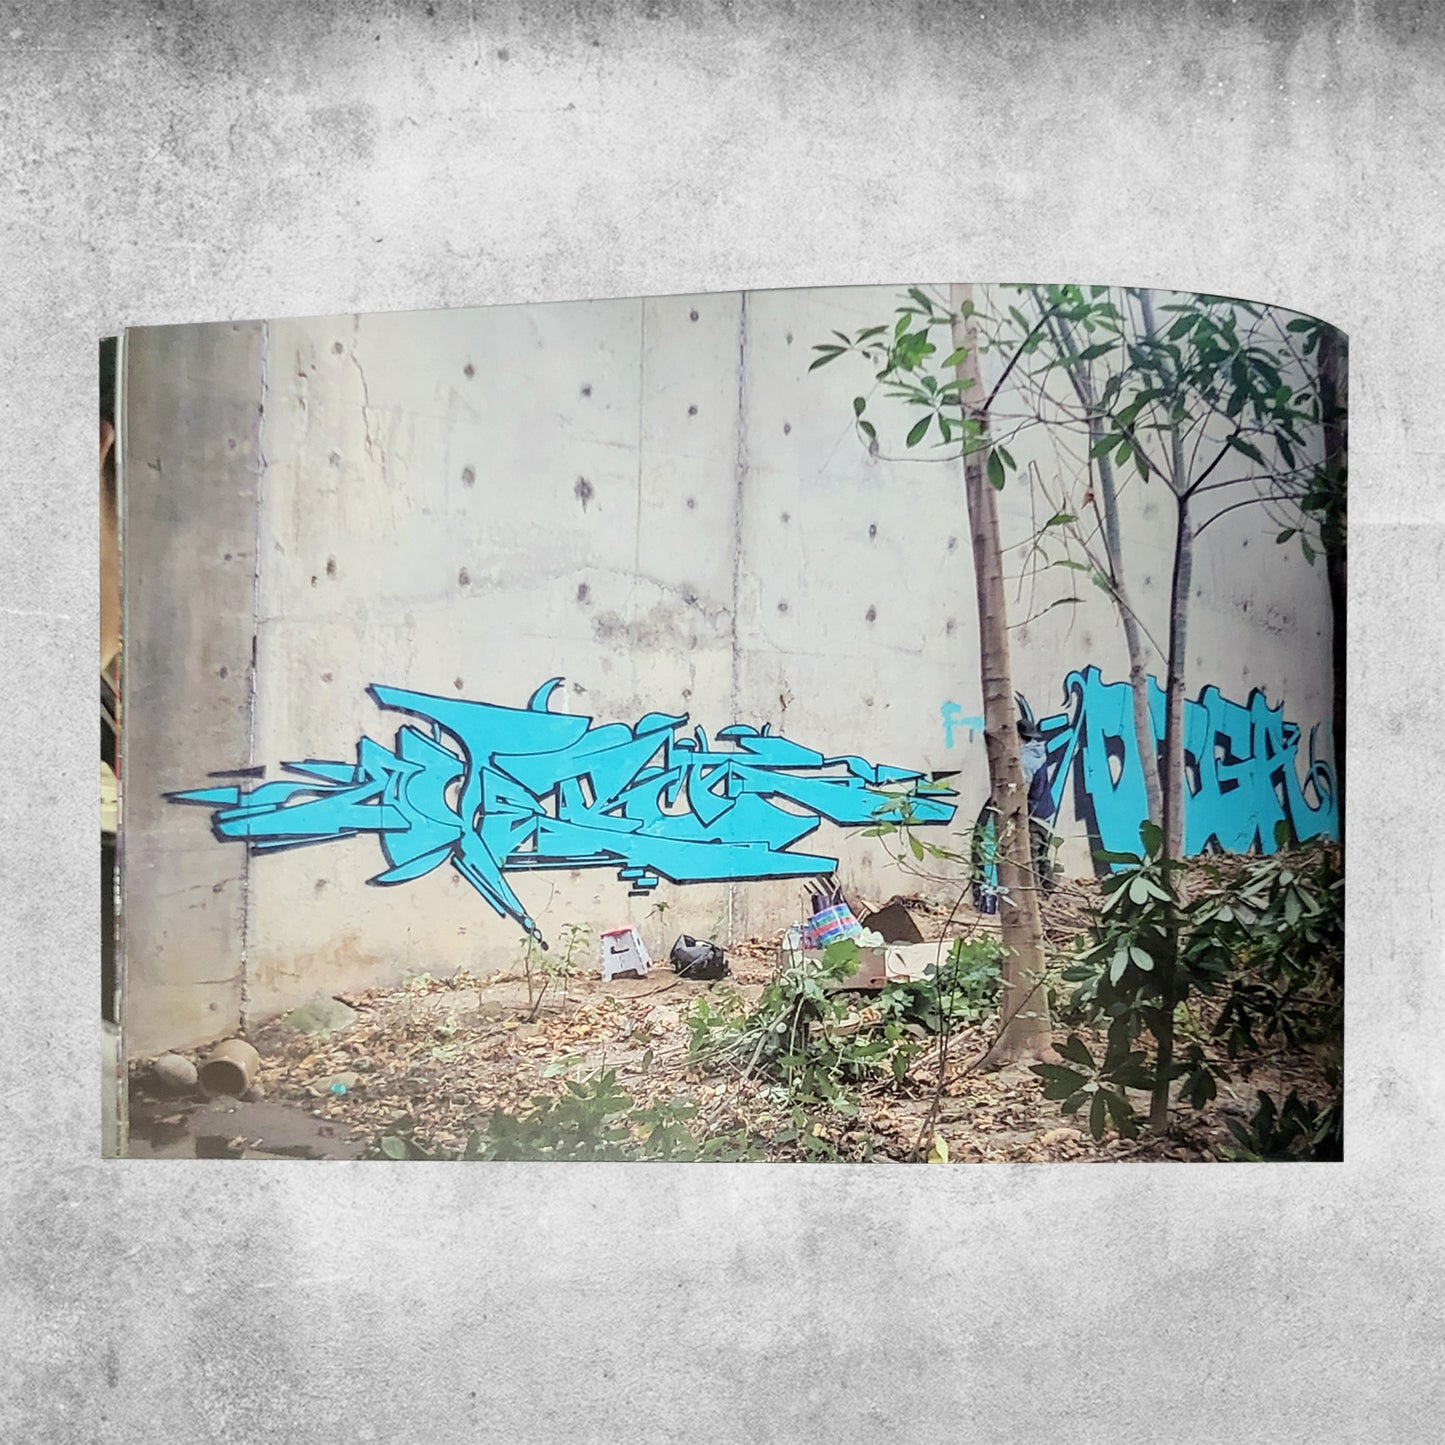 Self published graffiti magazine/zine with graff photography taken by artist overt, photo of graffiti on concrete wall.